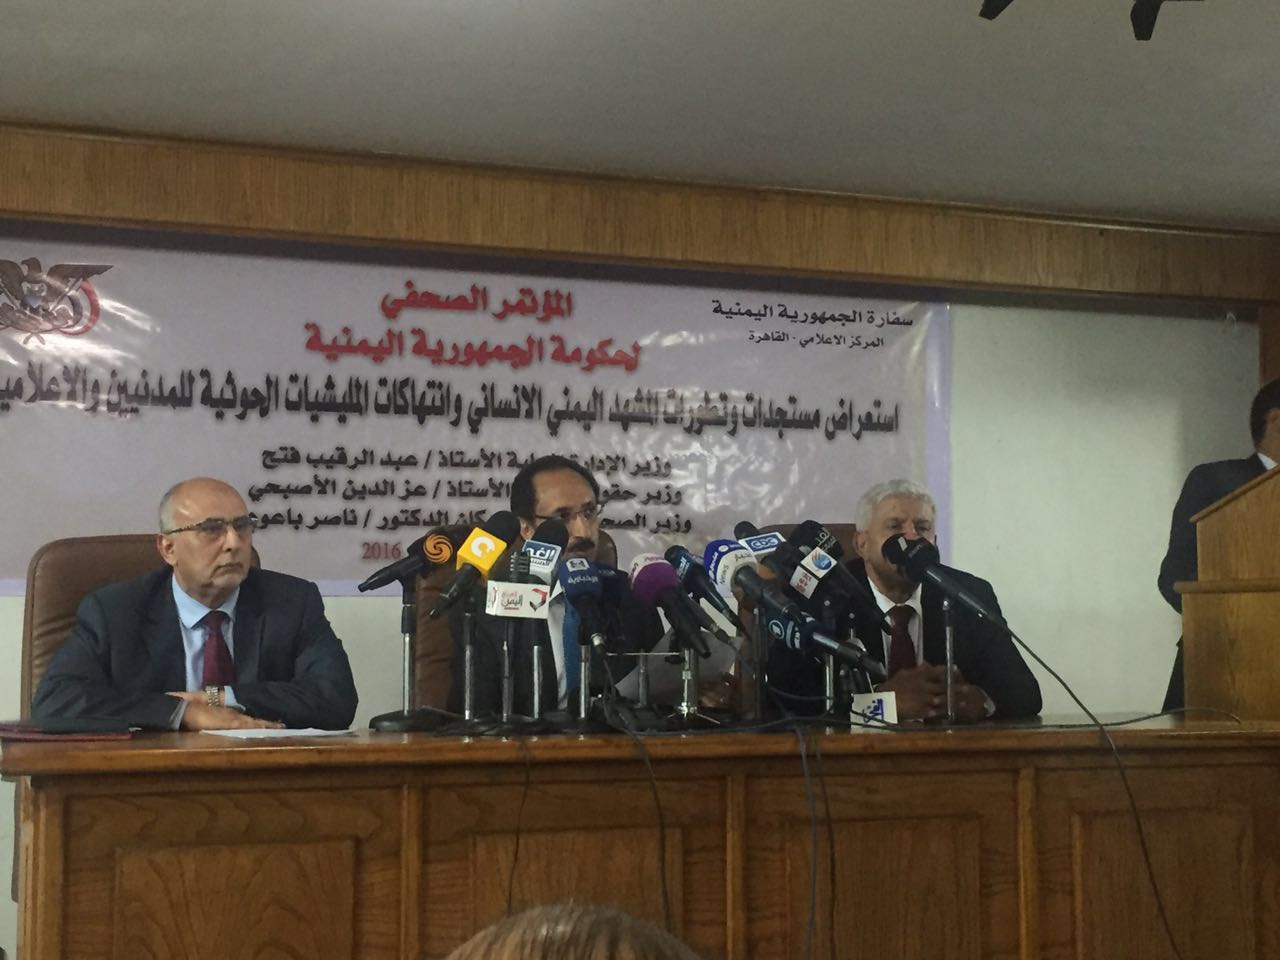 وزير يمني: المليشيا دمرت أكثر من 100 منشأة صحية وشردت 3.5 مليون شخص